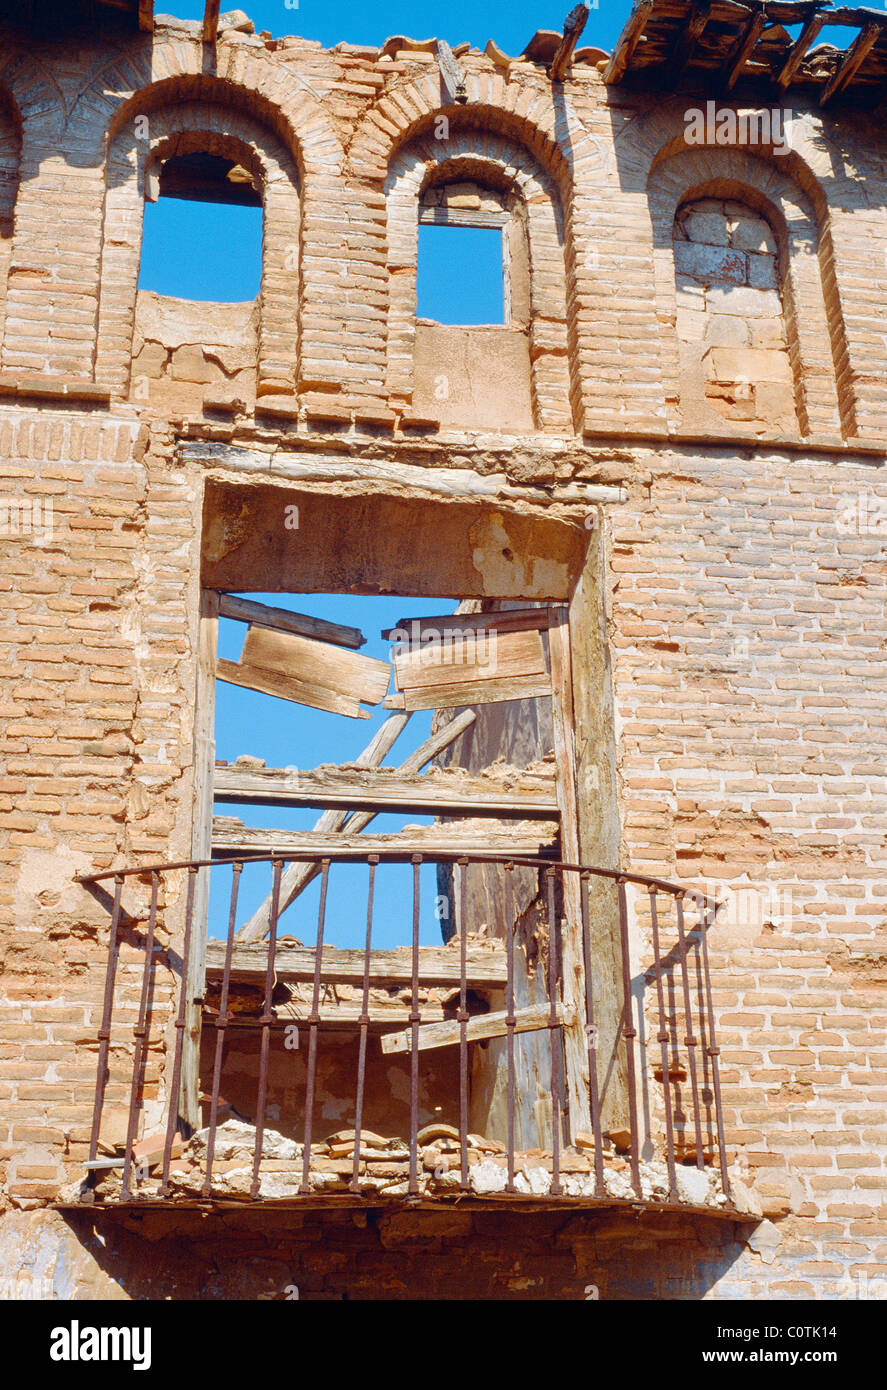 Detail of ruins. Belchite, Zaragoza province, Aragón, Spain. Stock Photo